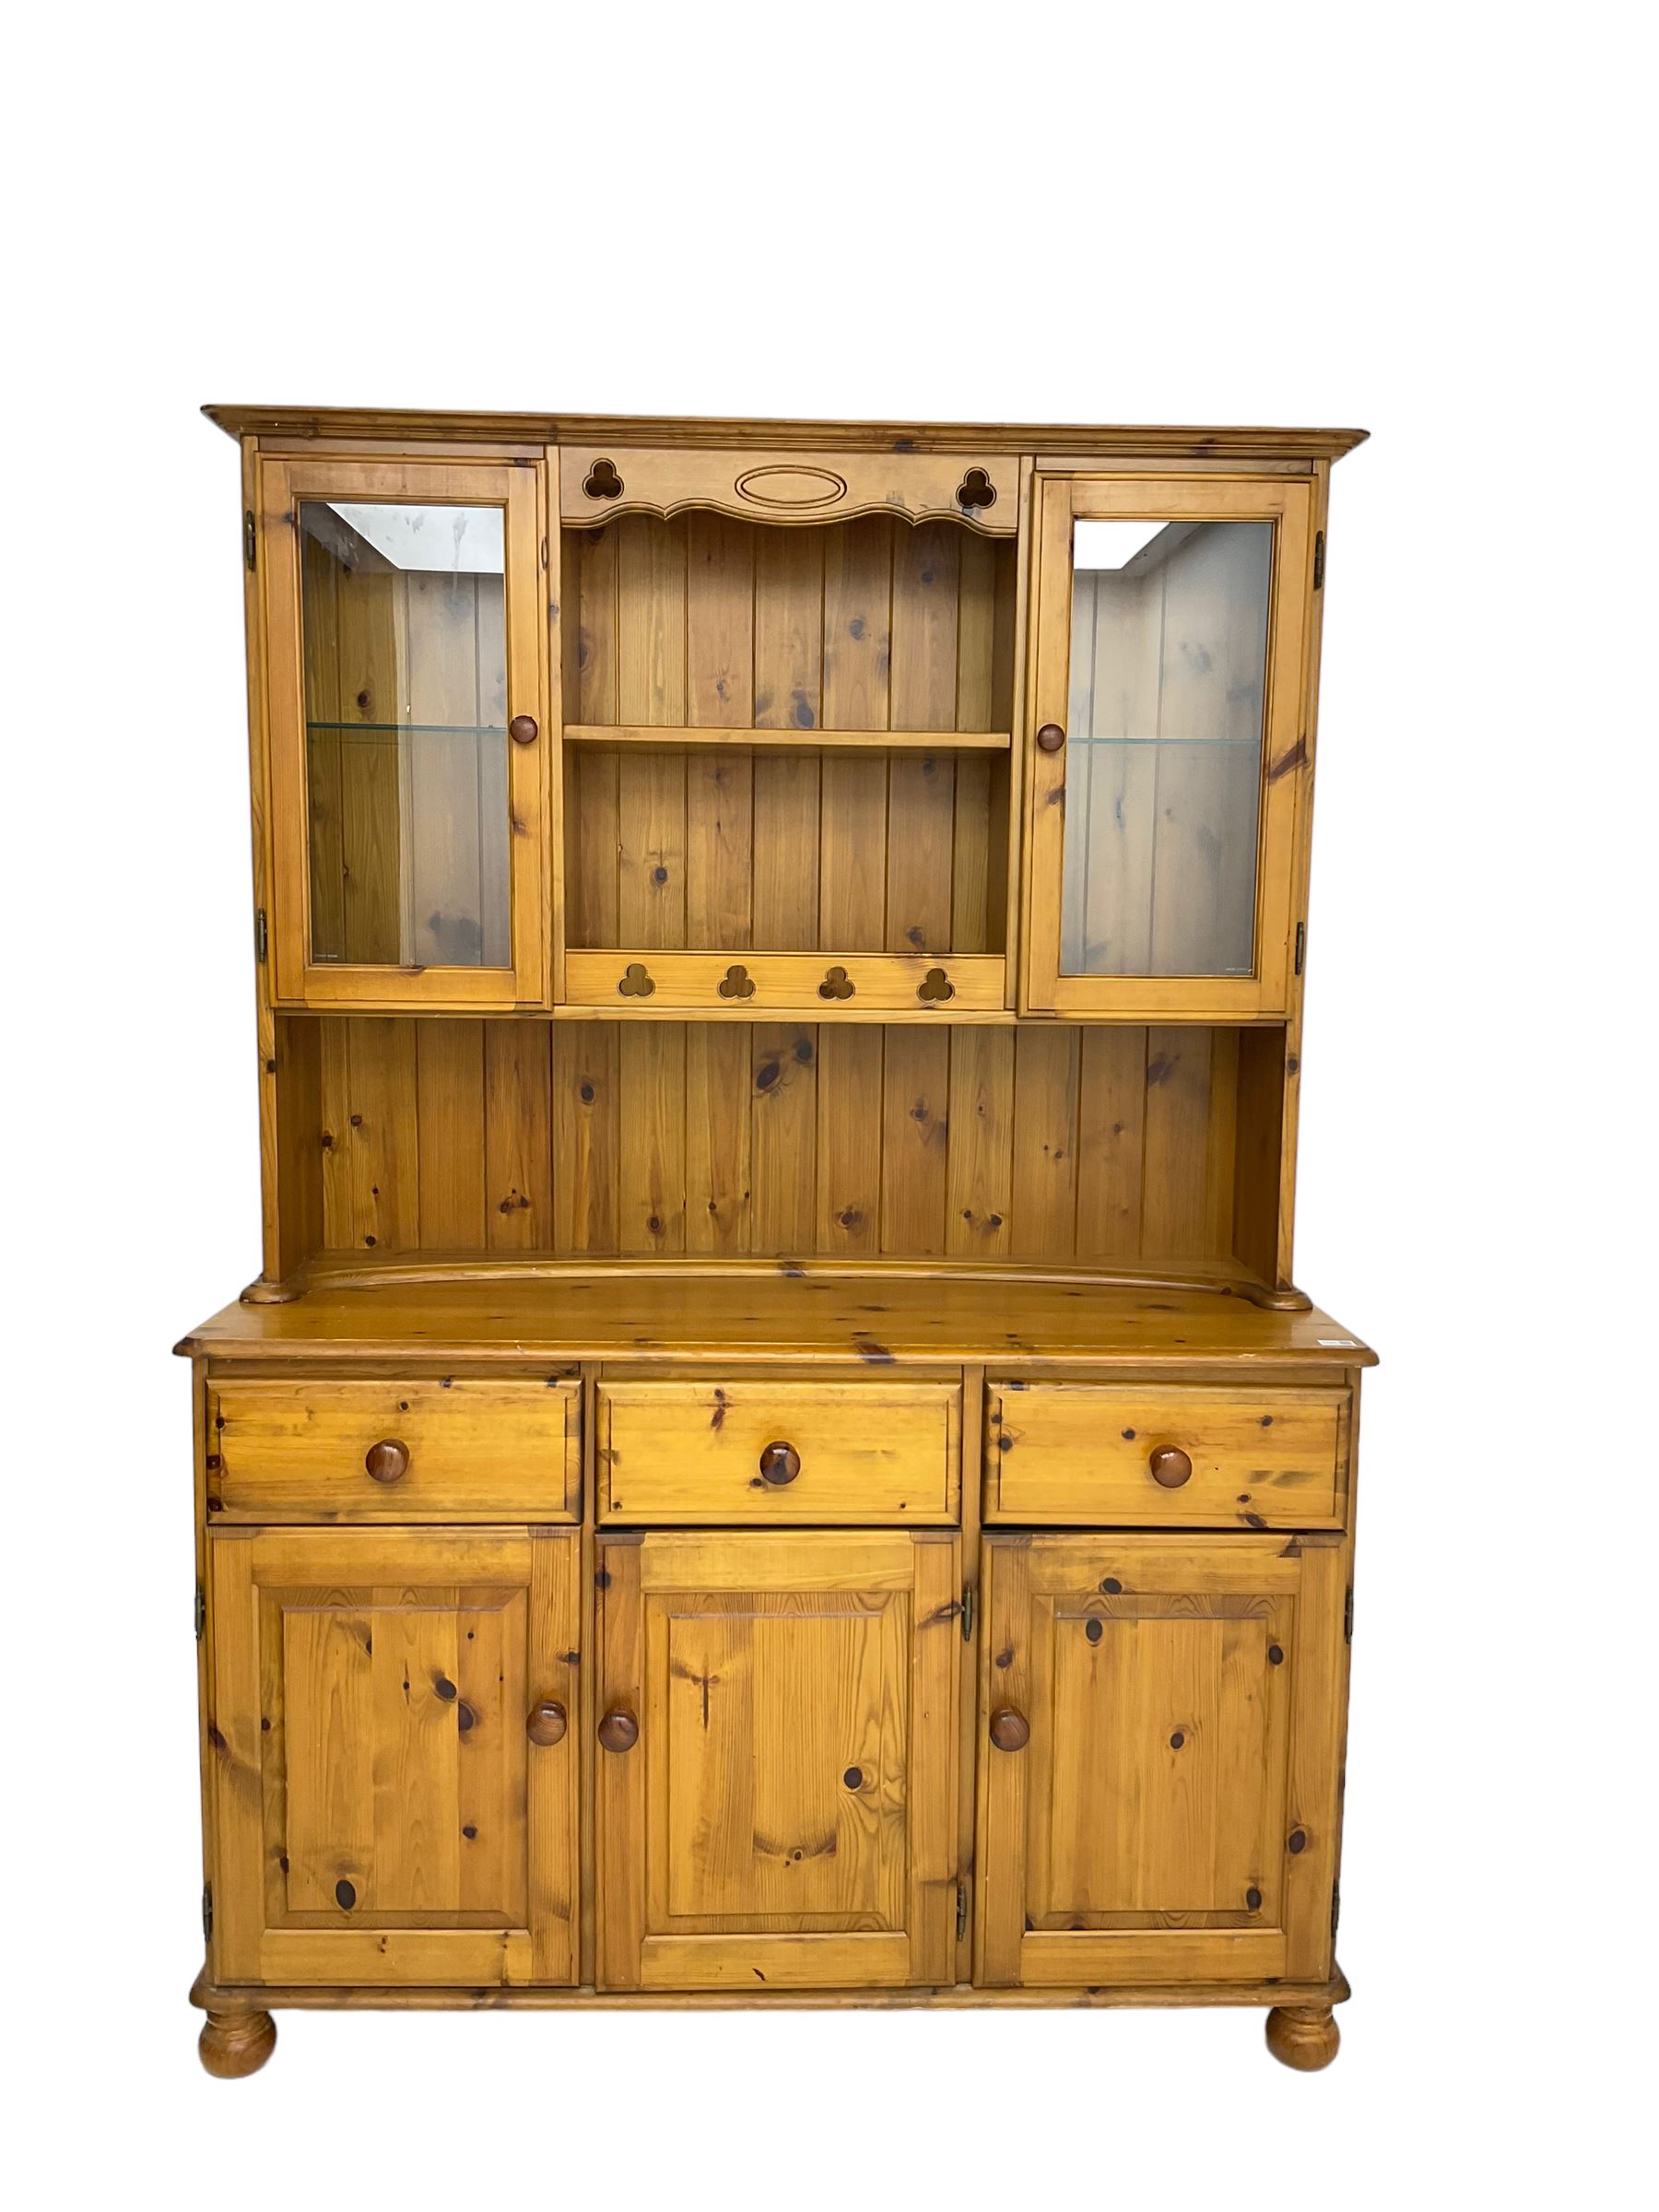 Traditional pine kitchen dresser